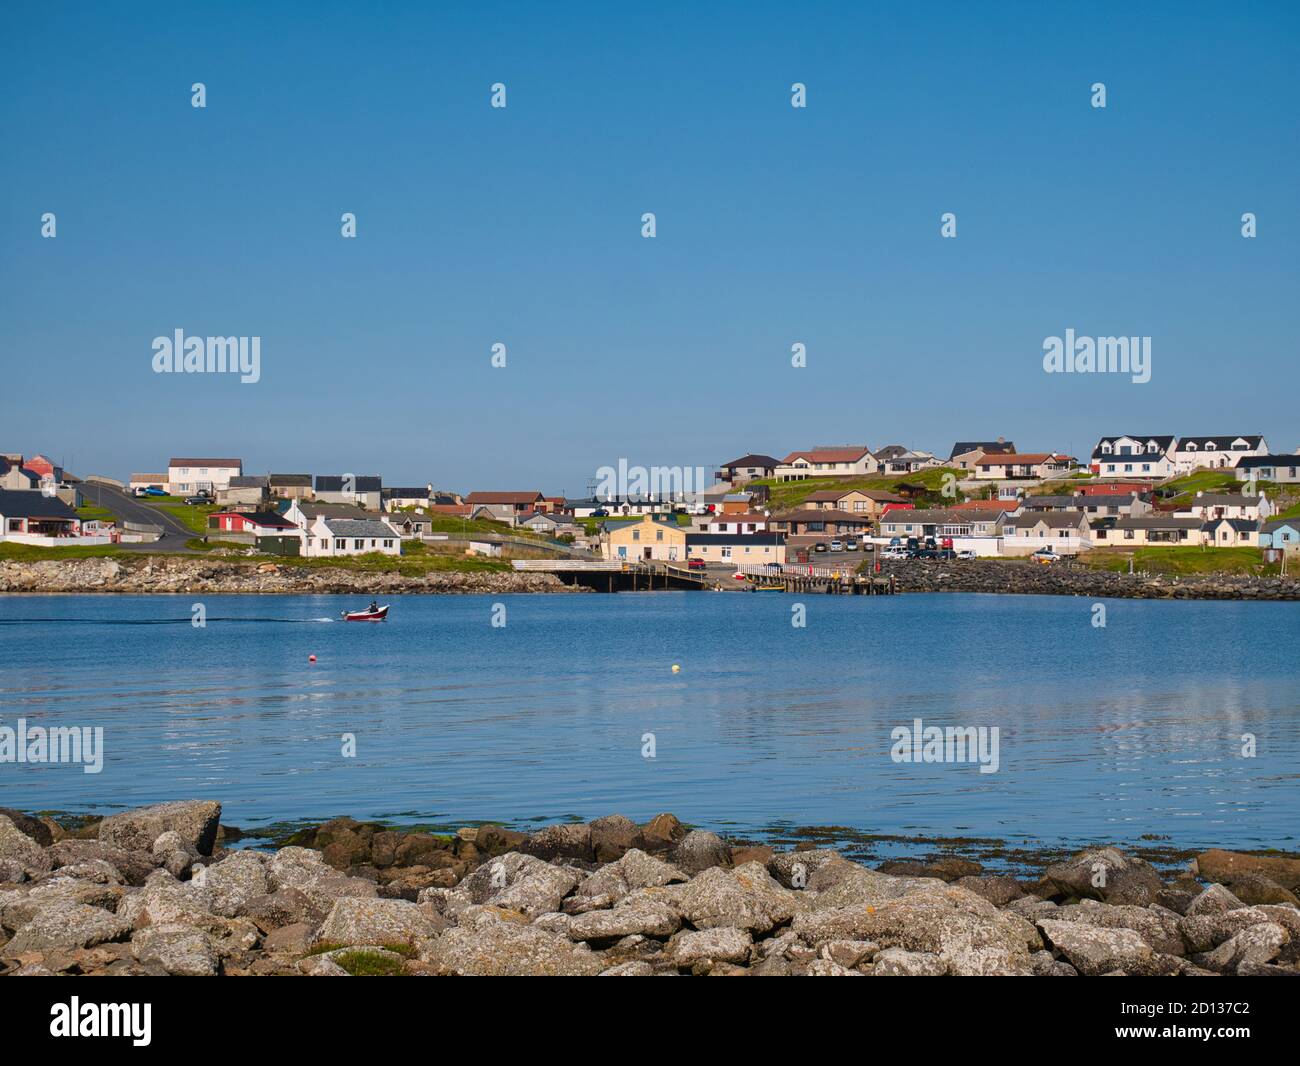 La comunità costiera di Hamnavoe a ovest della terraferma, Shetland, Scozia, Regno Unito - preso da Fugla Ness in una giornata di sole in estate Foto Stock